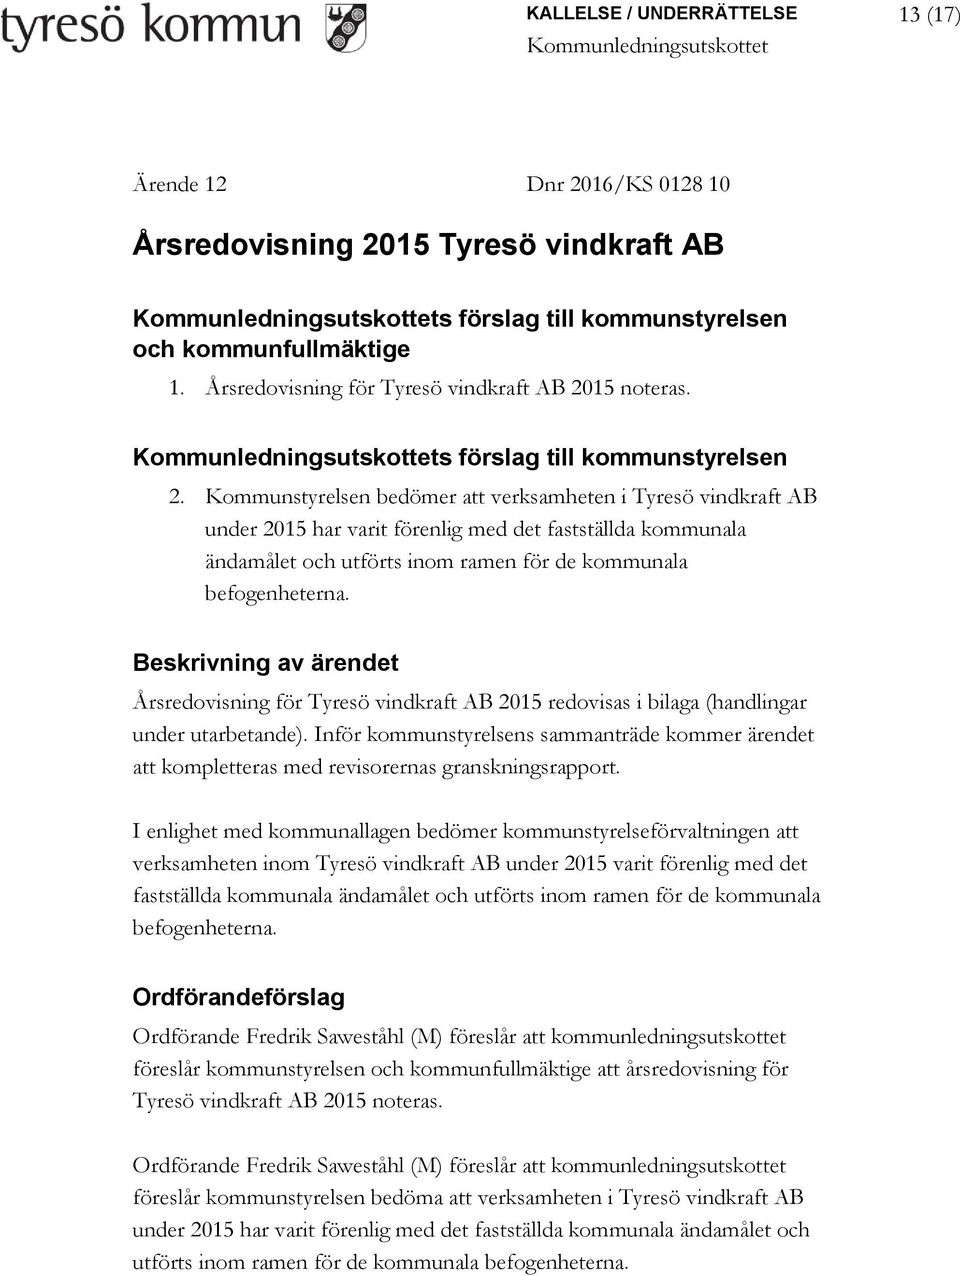 Kommunstyrelsen bedömer att verksamheten i Tyresö vindkraft AB under 2015 har varit förenlig med det fastställda kommunala ändamålet och utförts inom ramen för de kommunala befogenheterna.